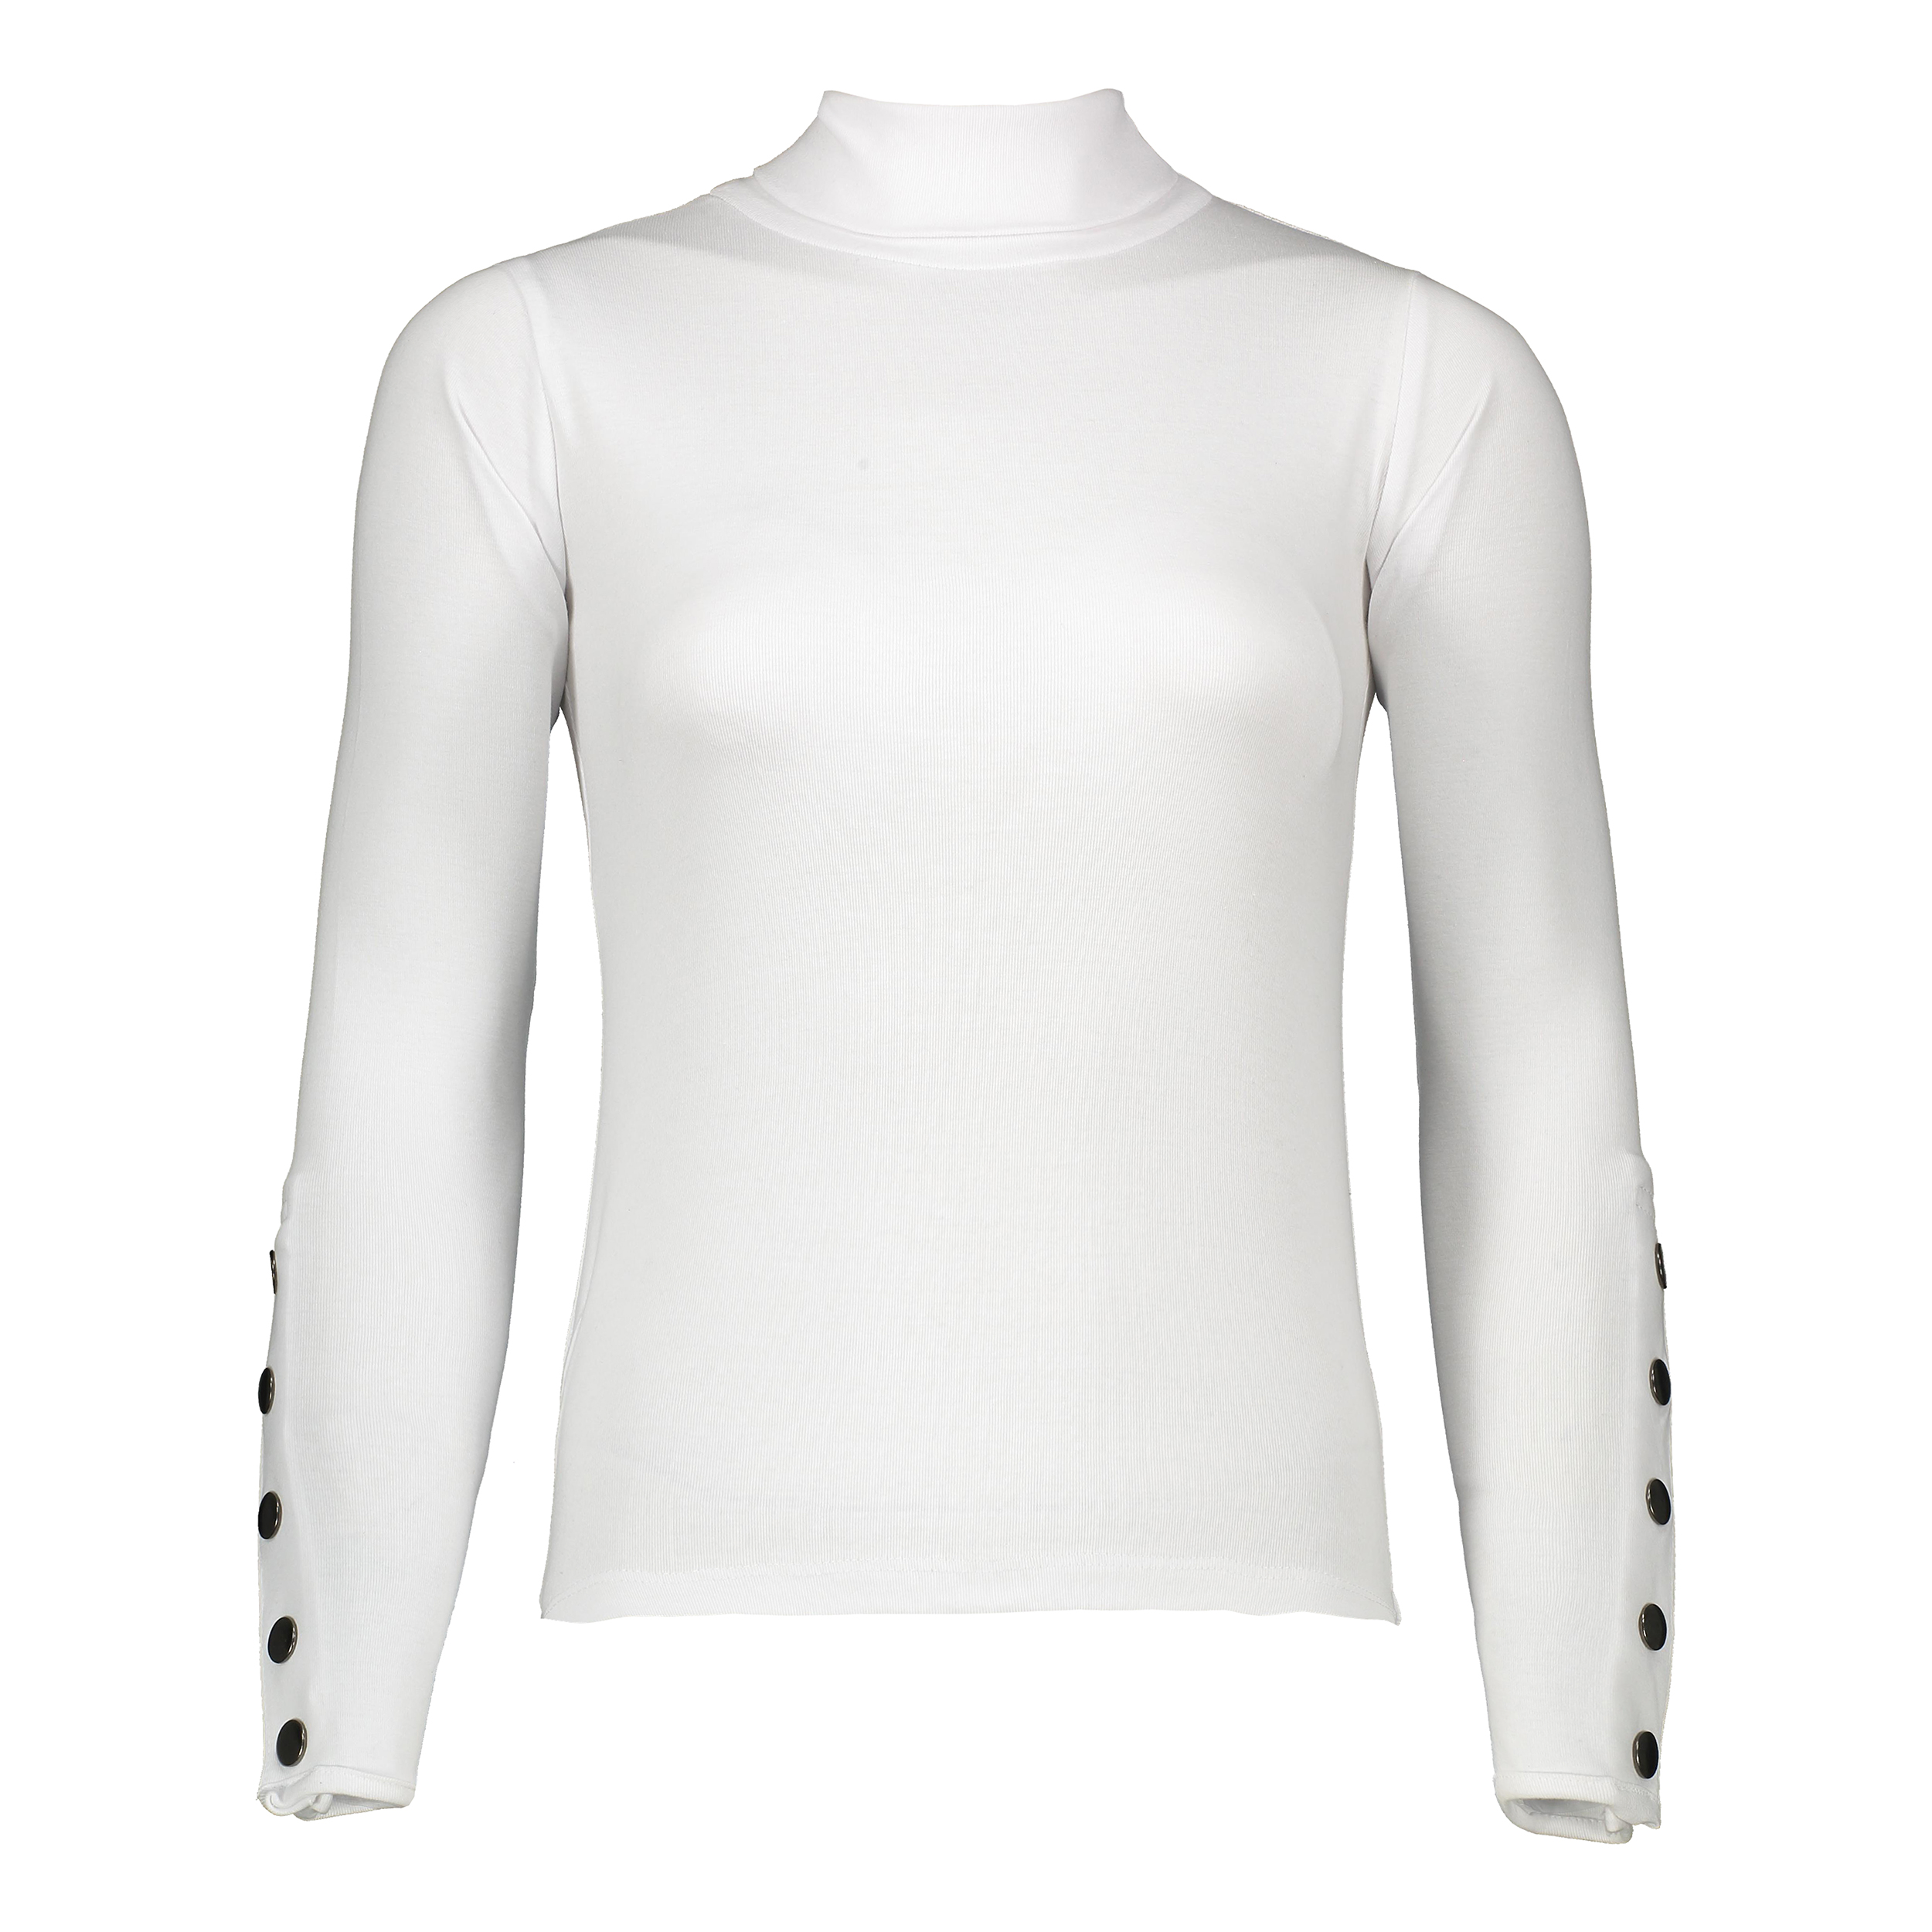 تی شرت یقه اسکی زنانه زانتوس مدل 14456-01 رنگ سفید